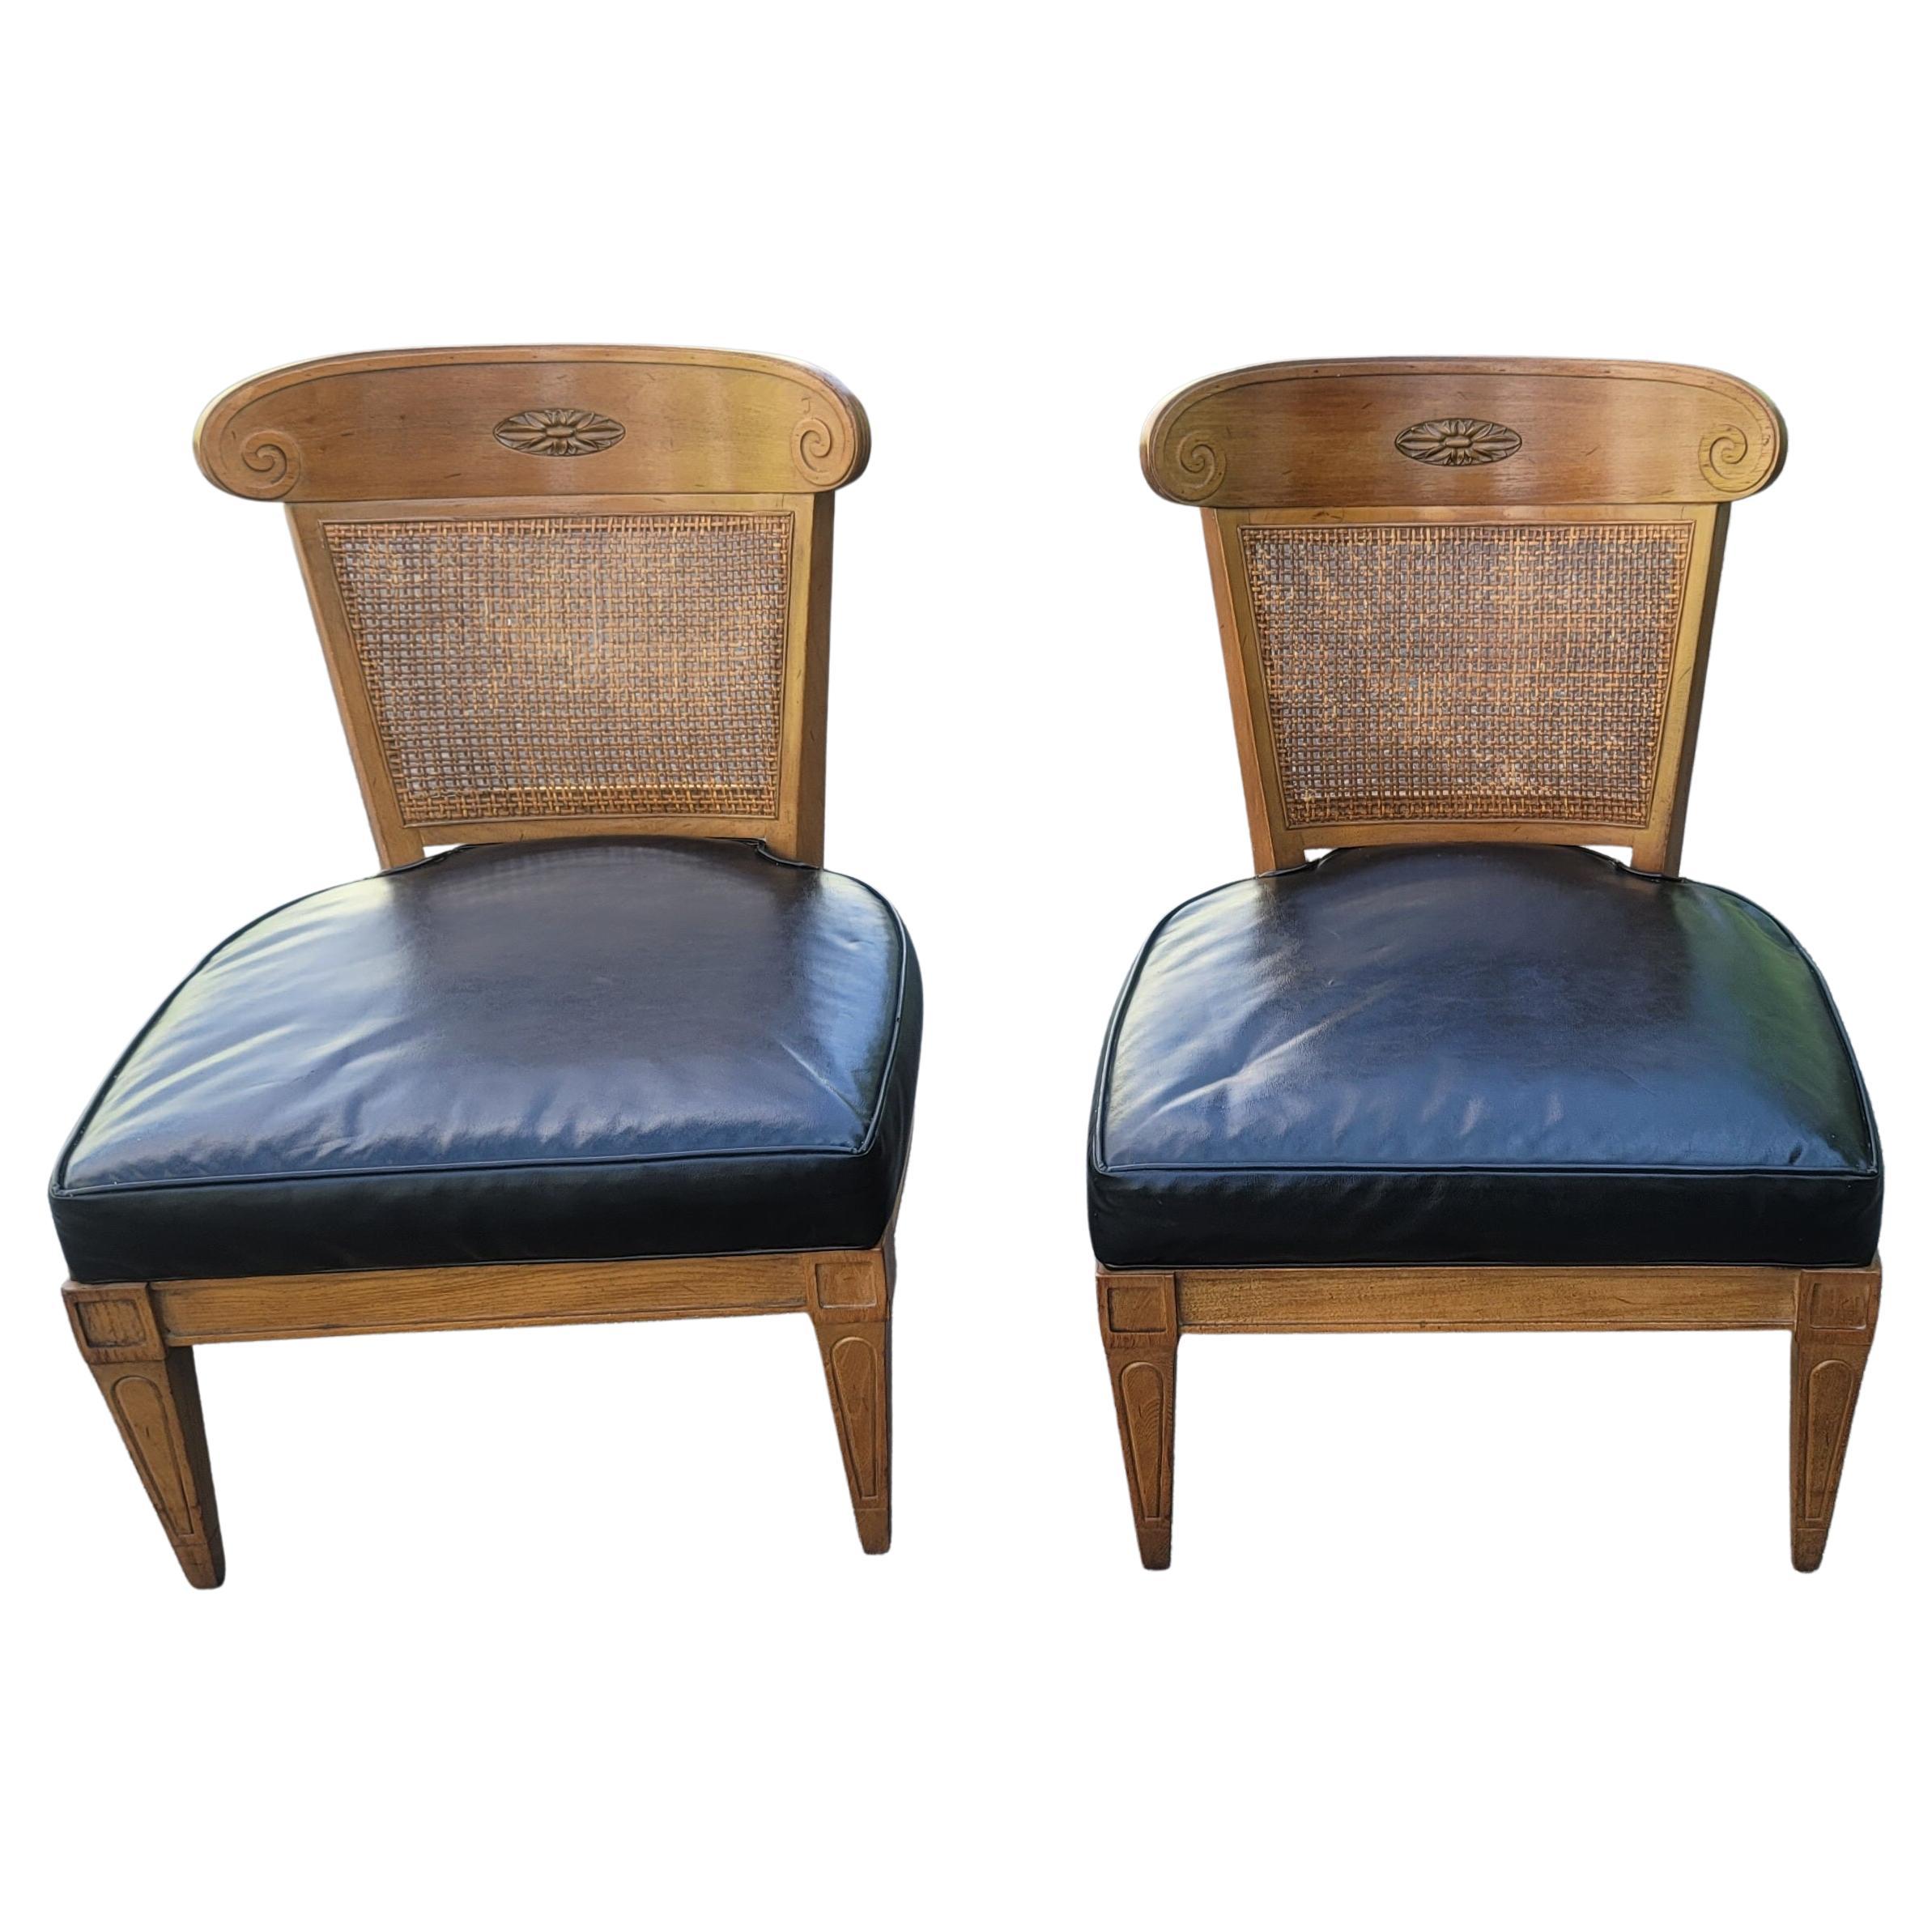 Ein wunderschönes Paar Vintage Mid-Century Modern Slipper Lounge Chairs von American of Martinsville. Sie haben einen Rahmen aus Nussbaumholz, eine Rückenlehne aus Schilfrohr und einen Sitz aus Kunstleder und sind in gutem Zustand. Sie sind